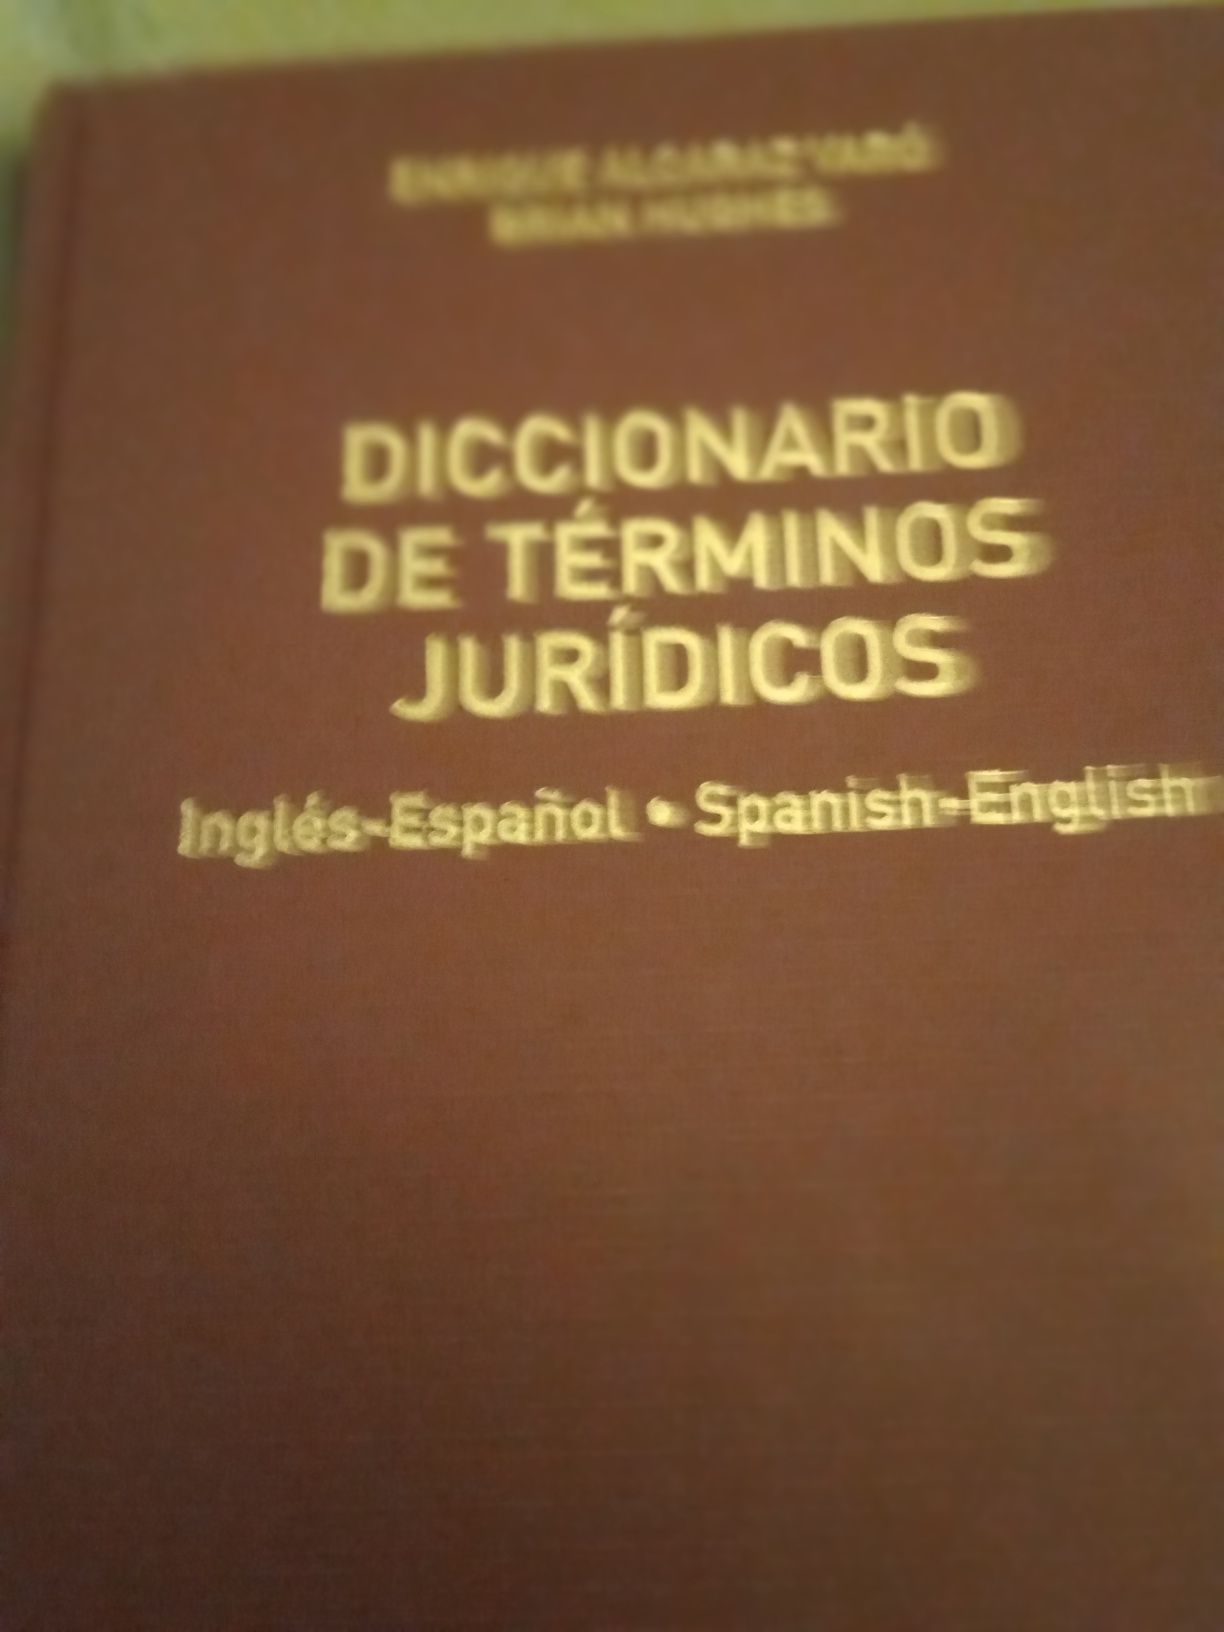 Direito Marítimo-dicionario de términos jurídicos inglês espanhol